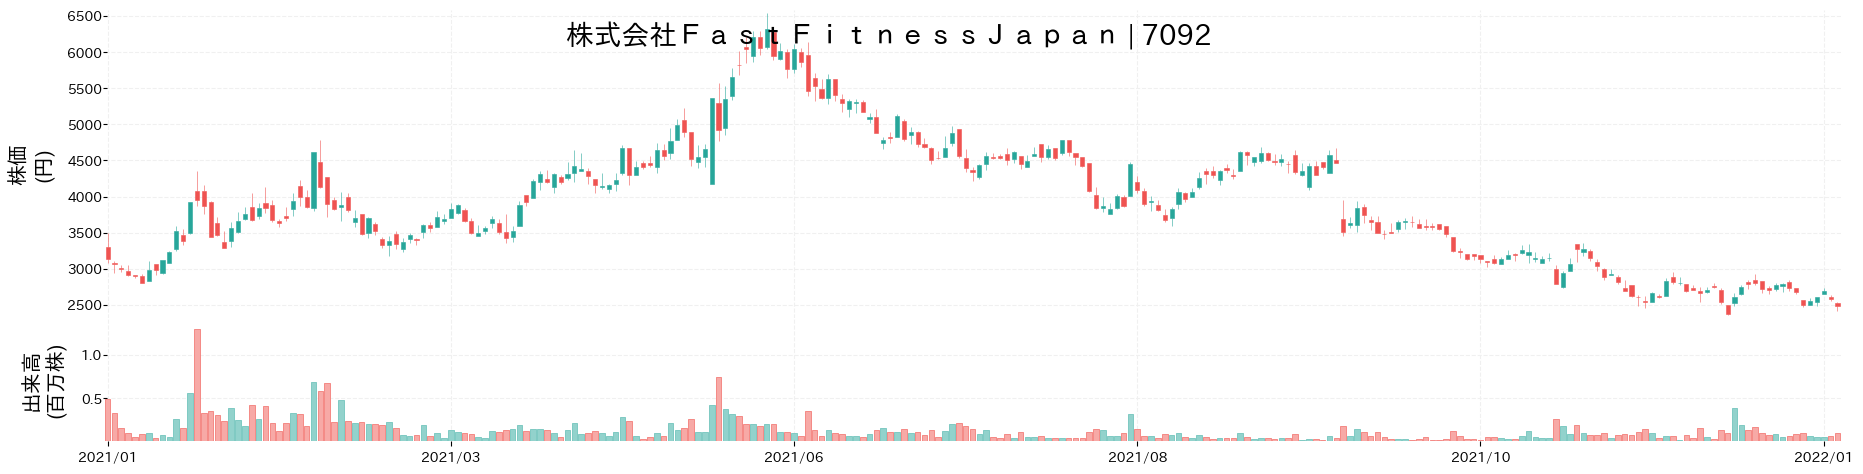 Fast Fitness Japanの株価推移(2021)